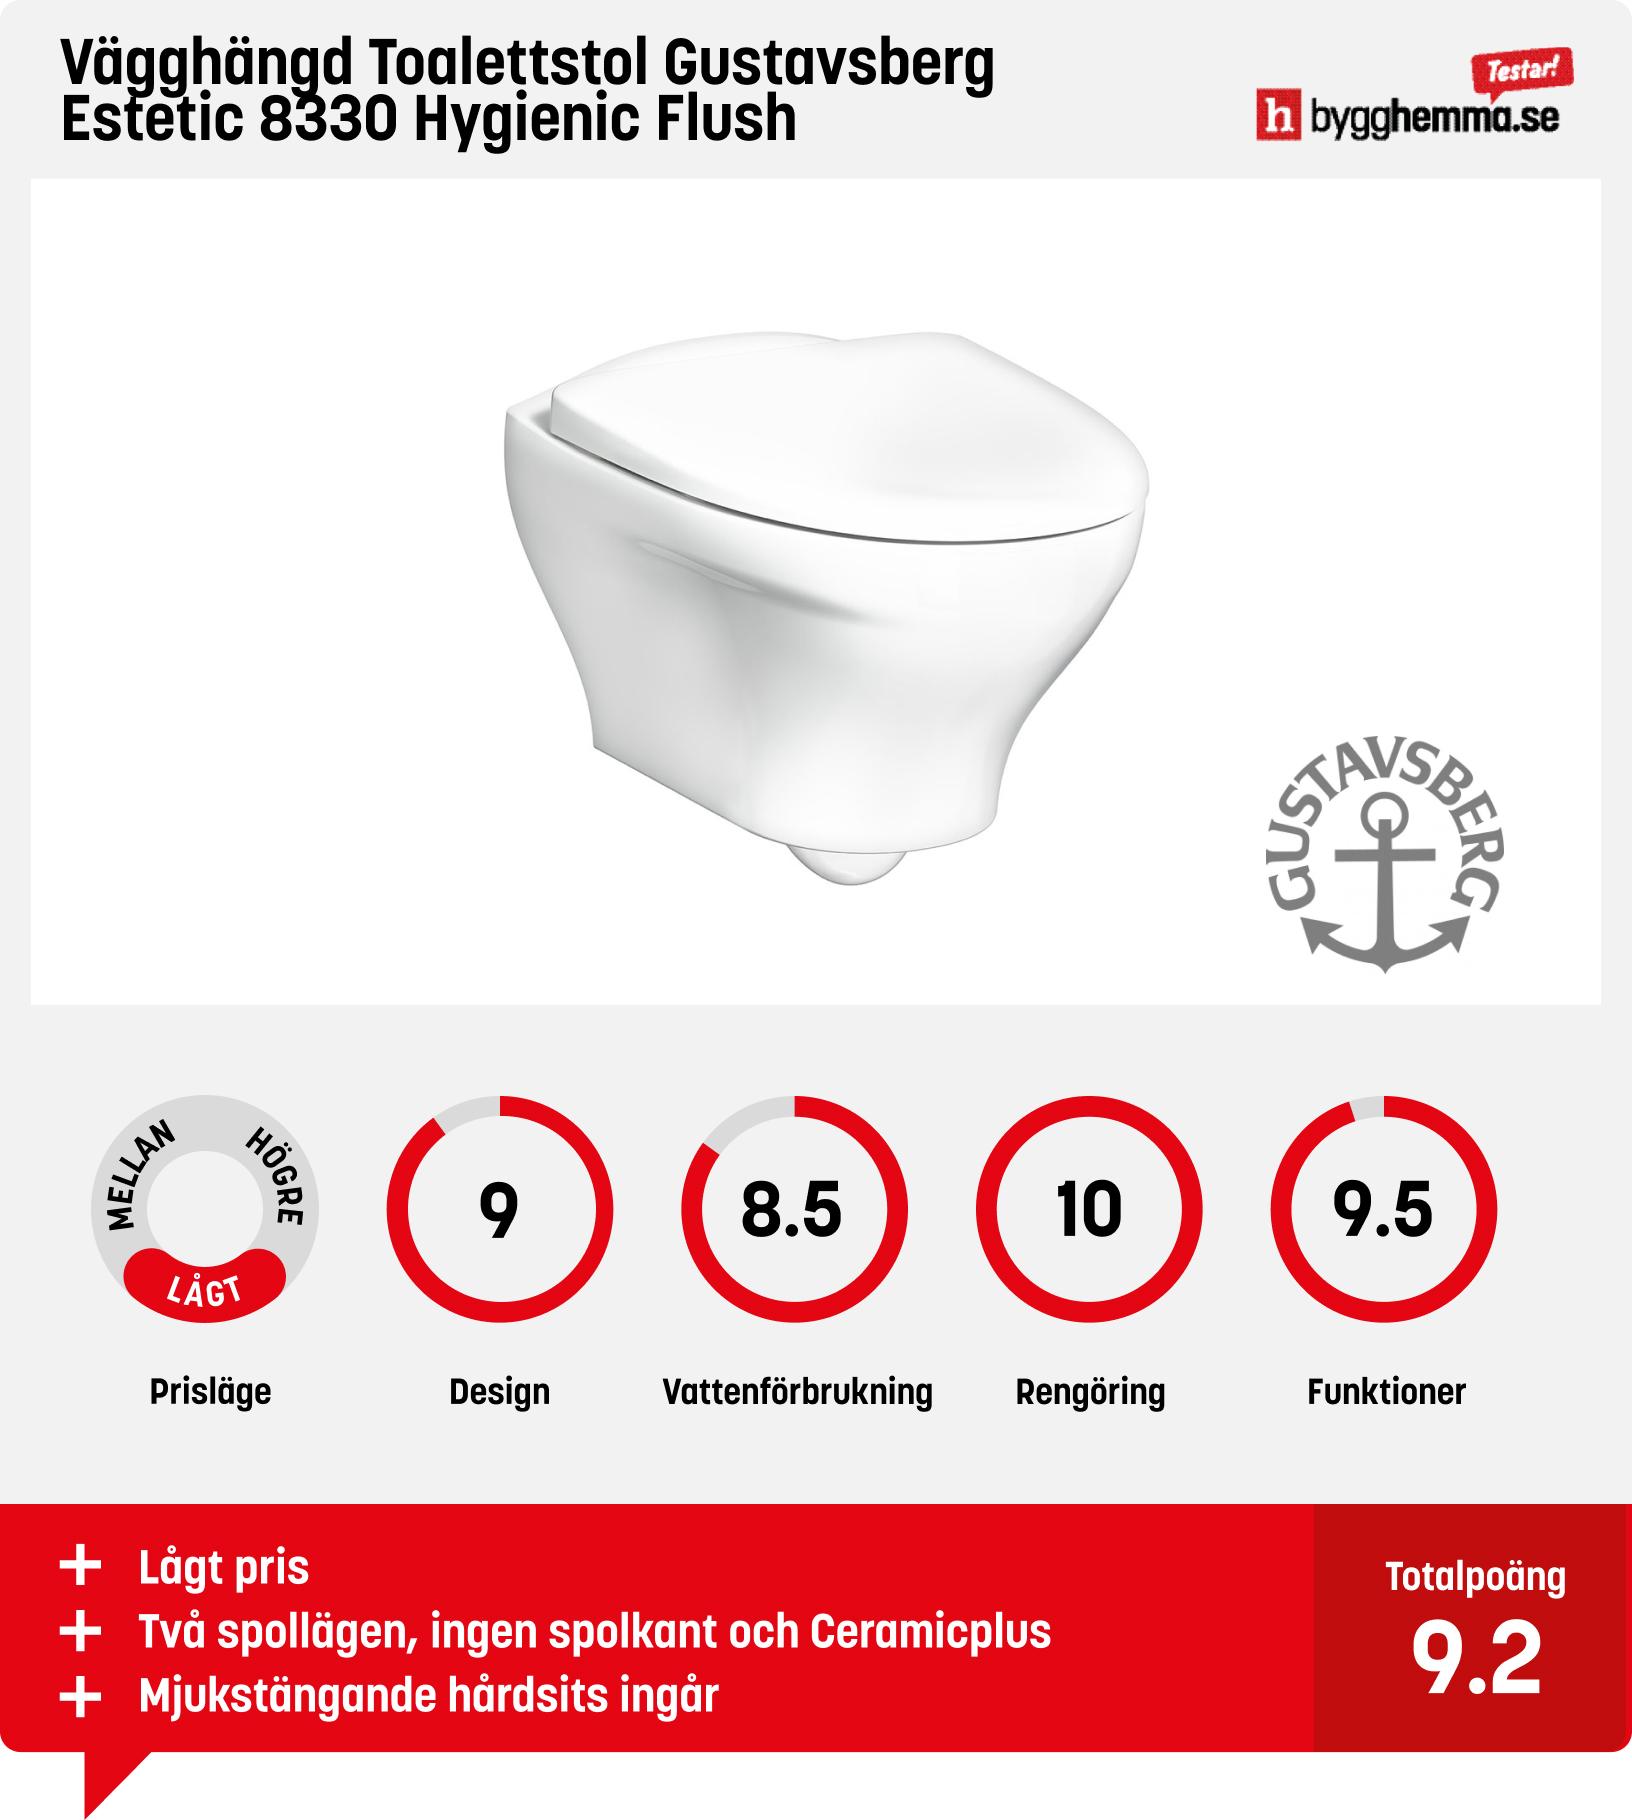 Vägghängd toalett bäst i test - Vägghängd Toalettstol Gustavsberg Estetic 8330 Hygienic Flush